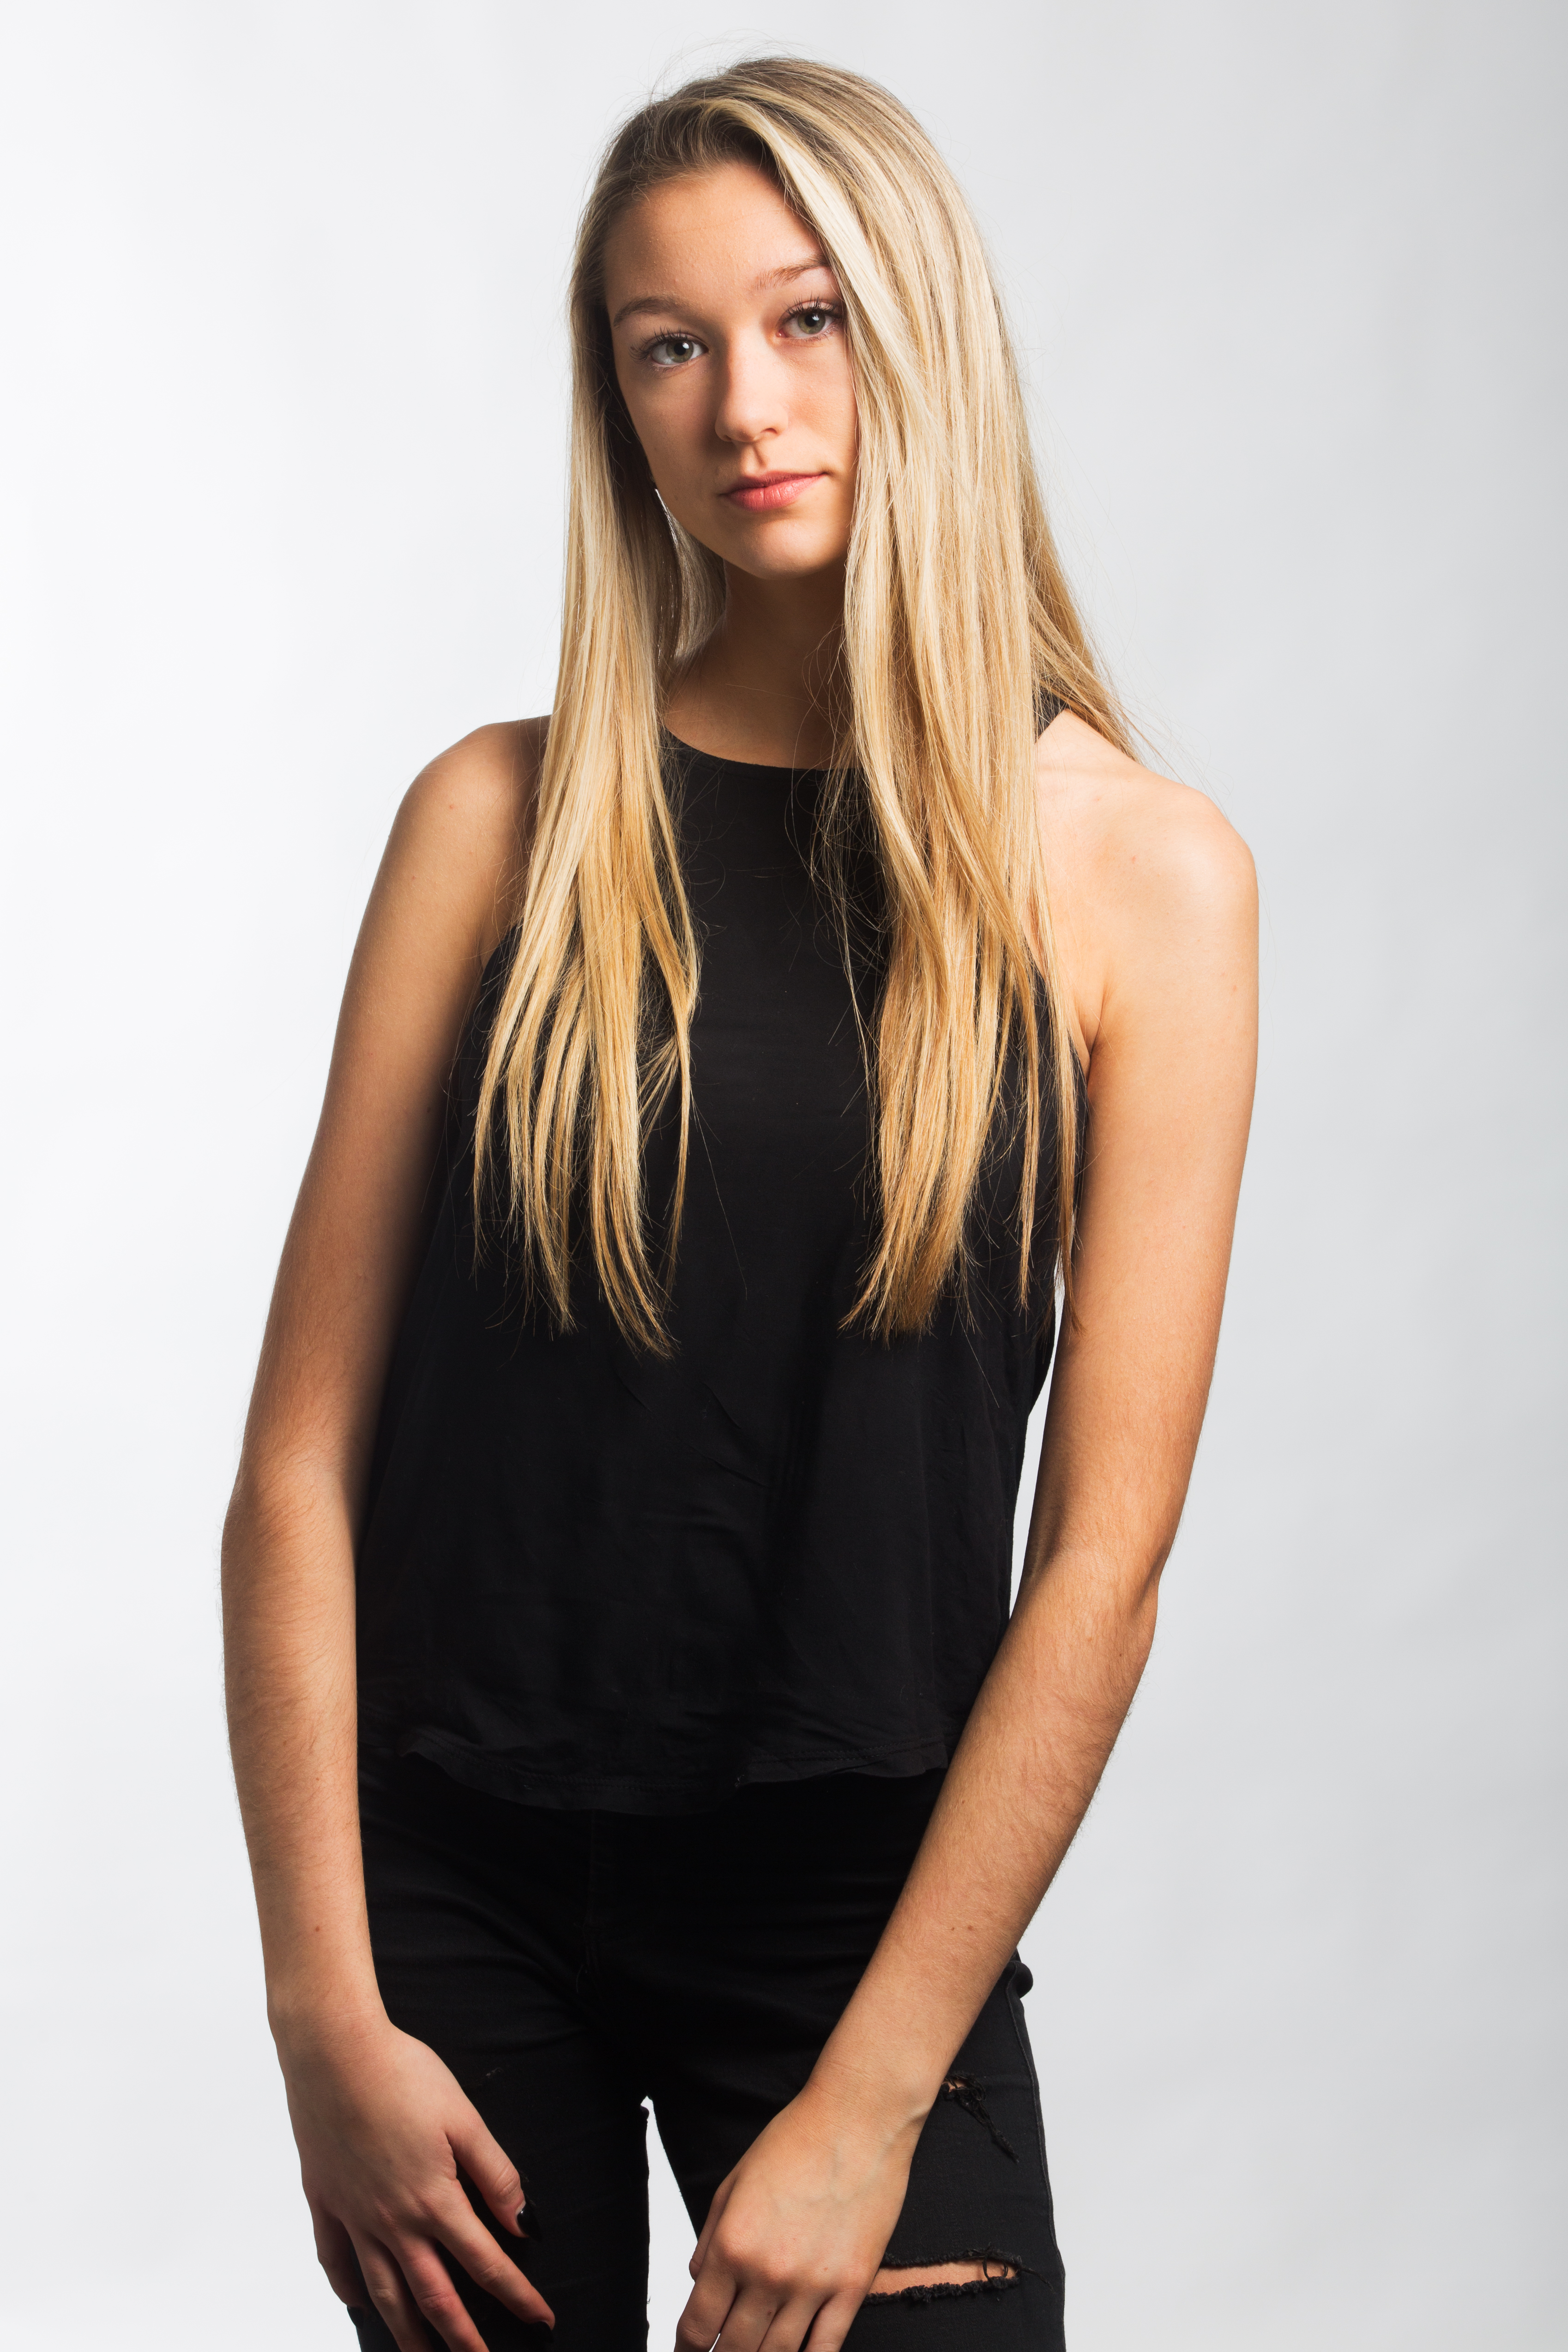 Zoe Assets Model Agency